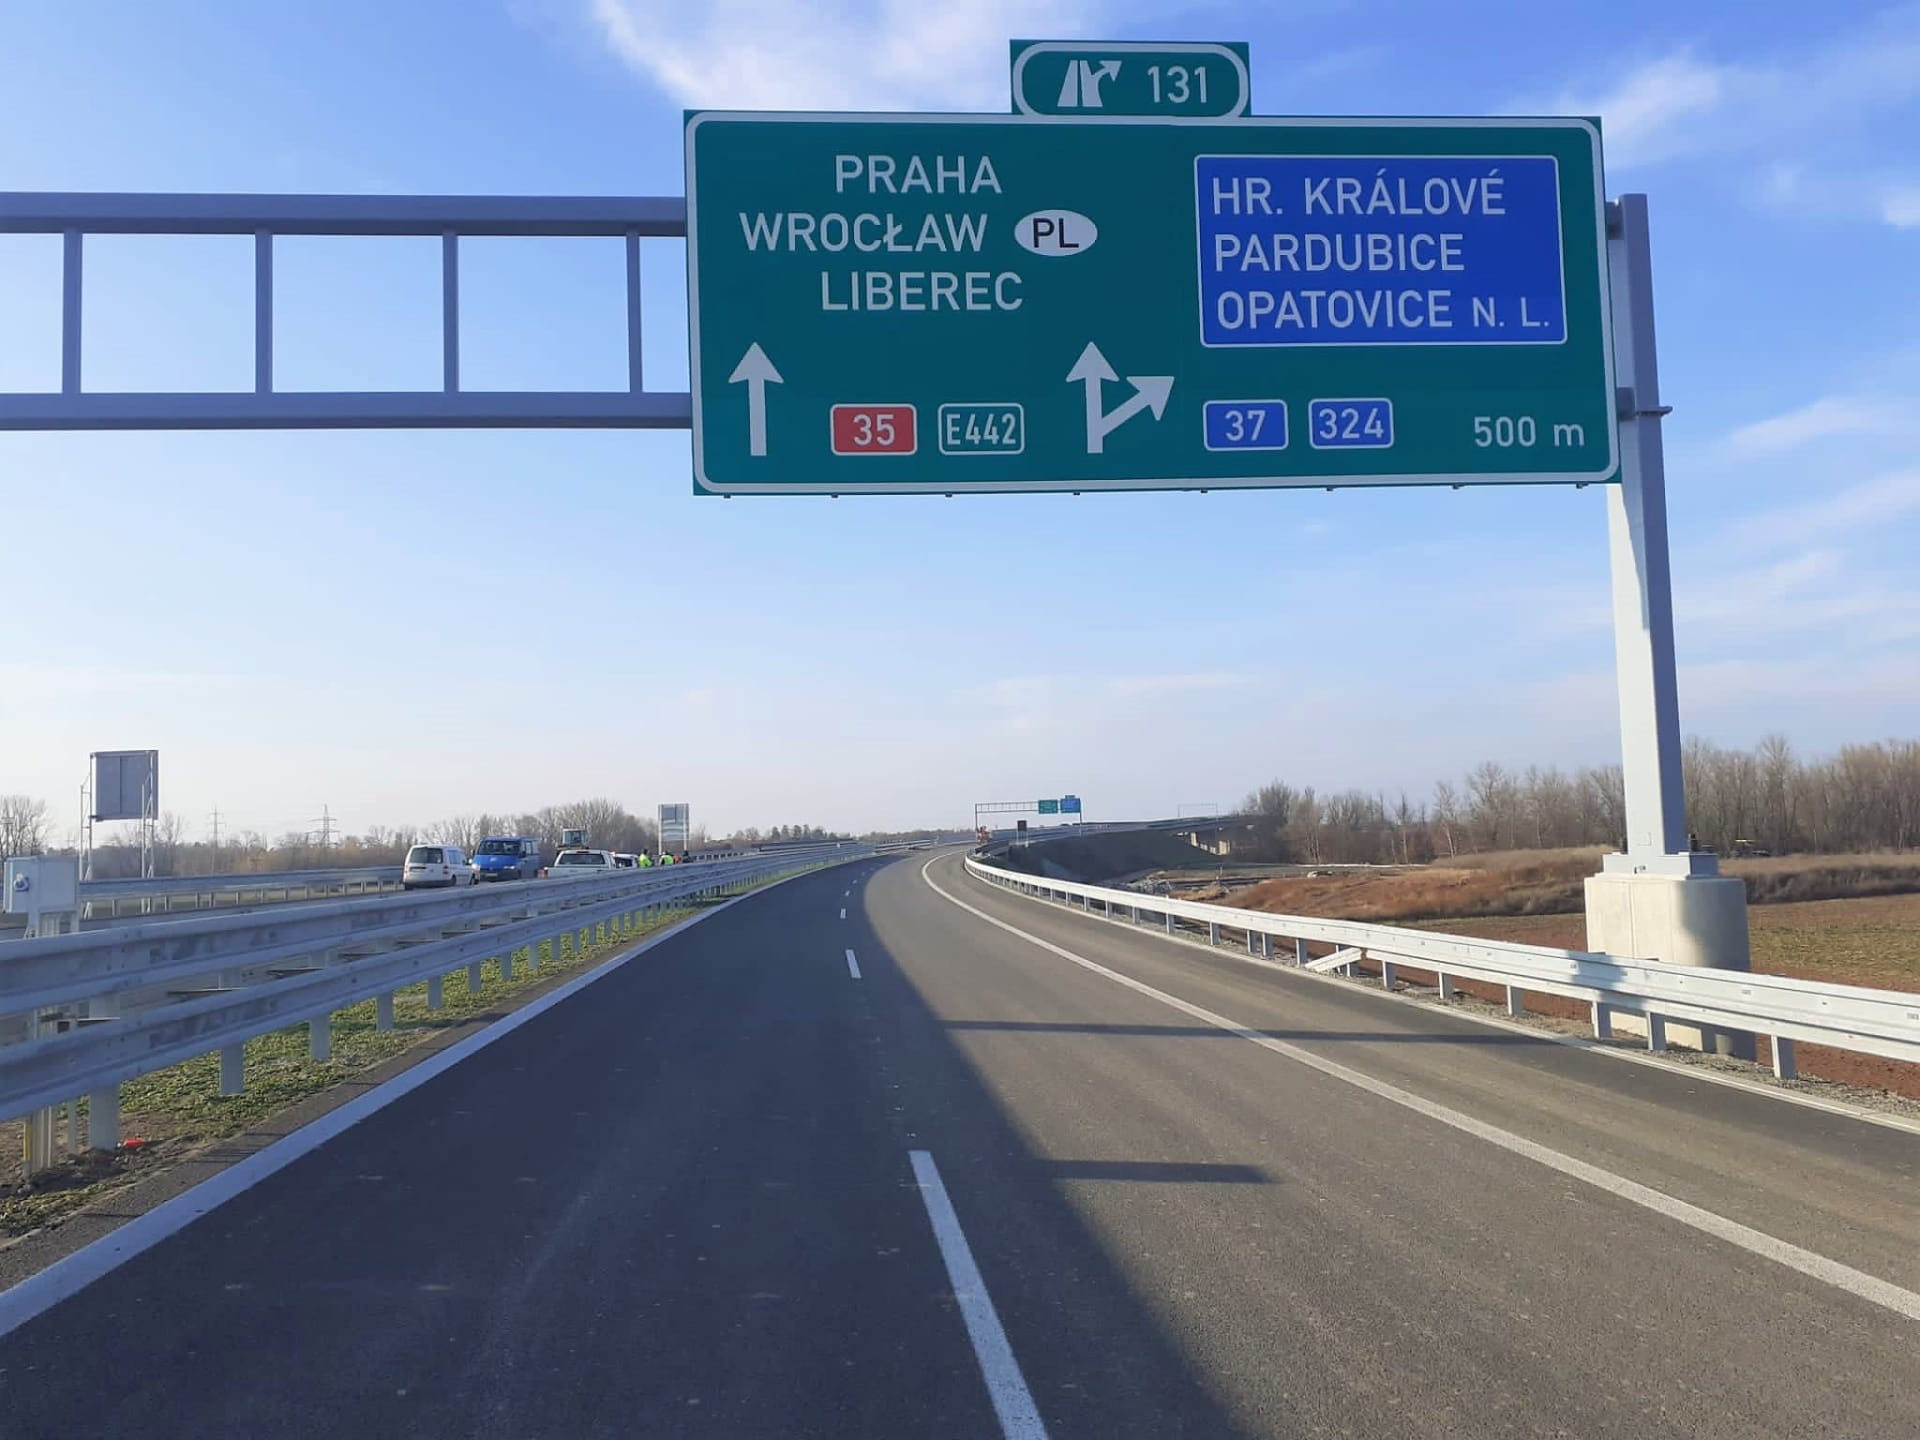 Zejména nové nebo nově upravené úseky českých dálnic by technicky snesly mnohem vyšší rychlost než klasických 130 km/h.